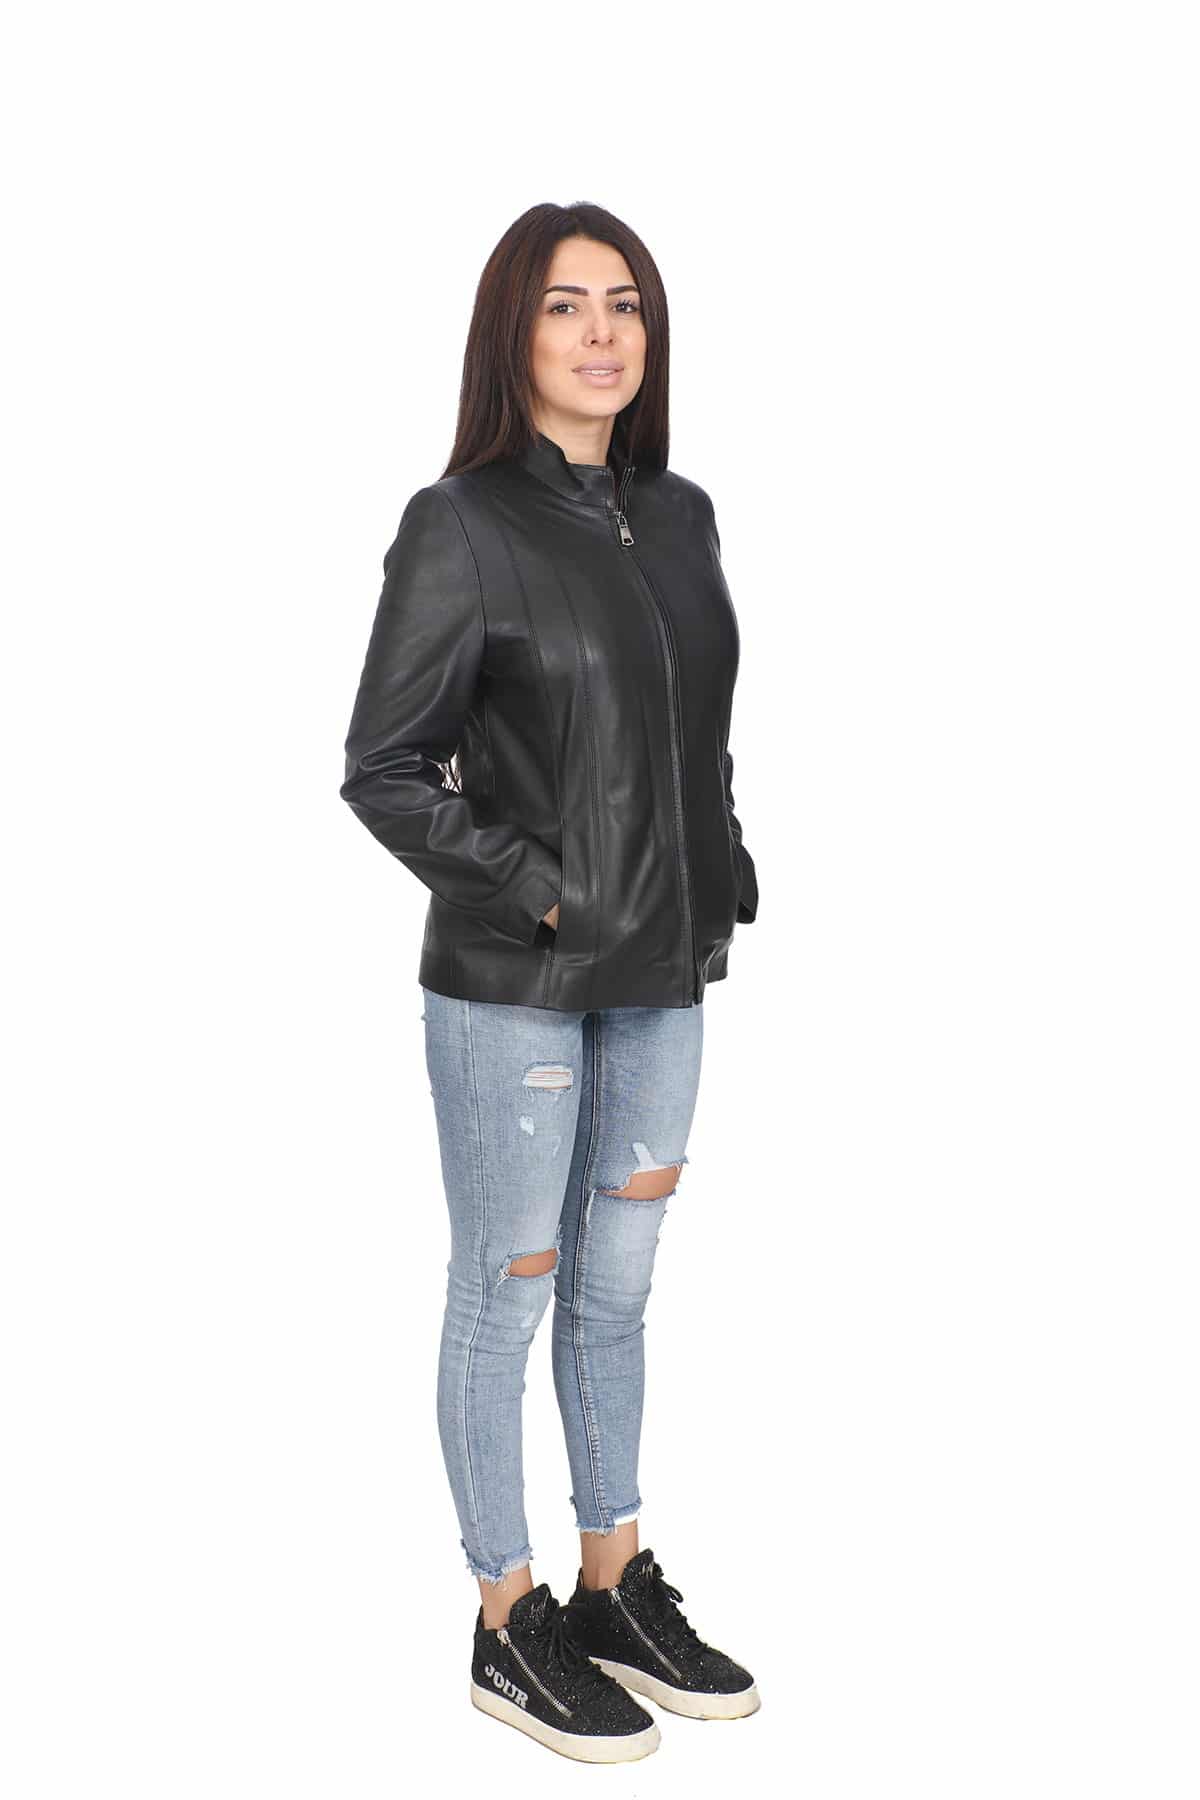 Janet Black Women’s Lambskin Leather Jacket – UFS